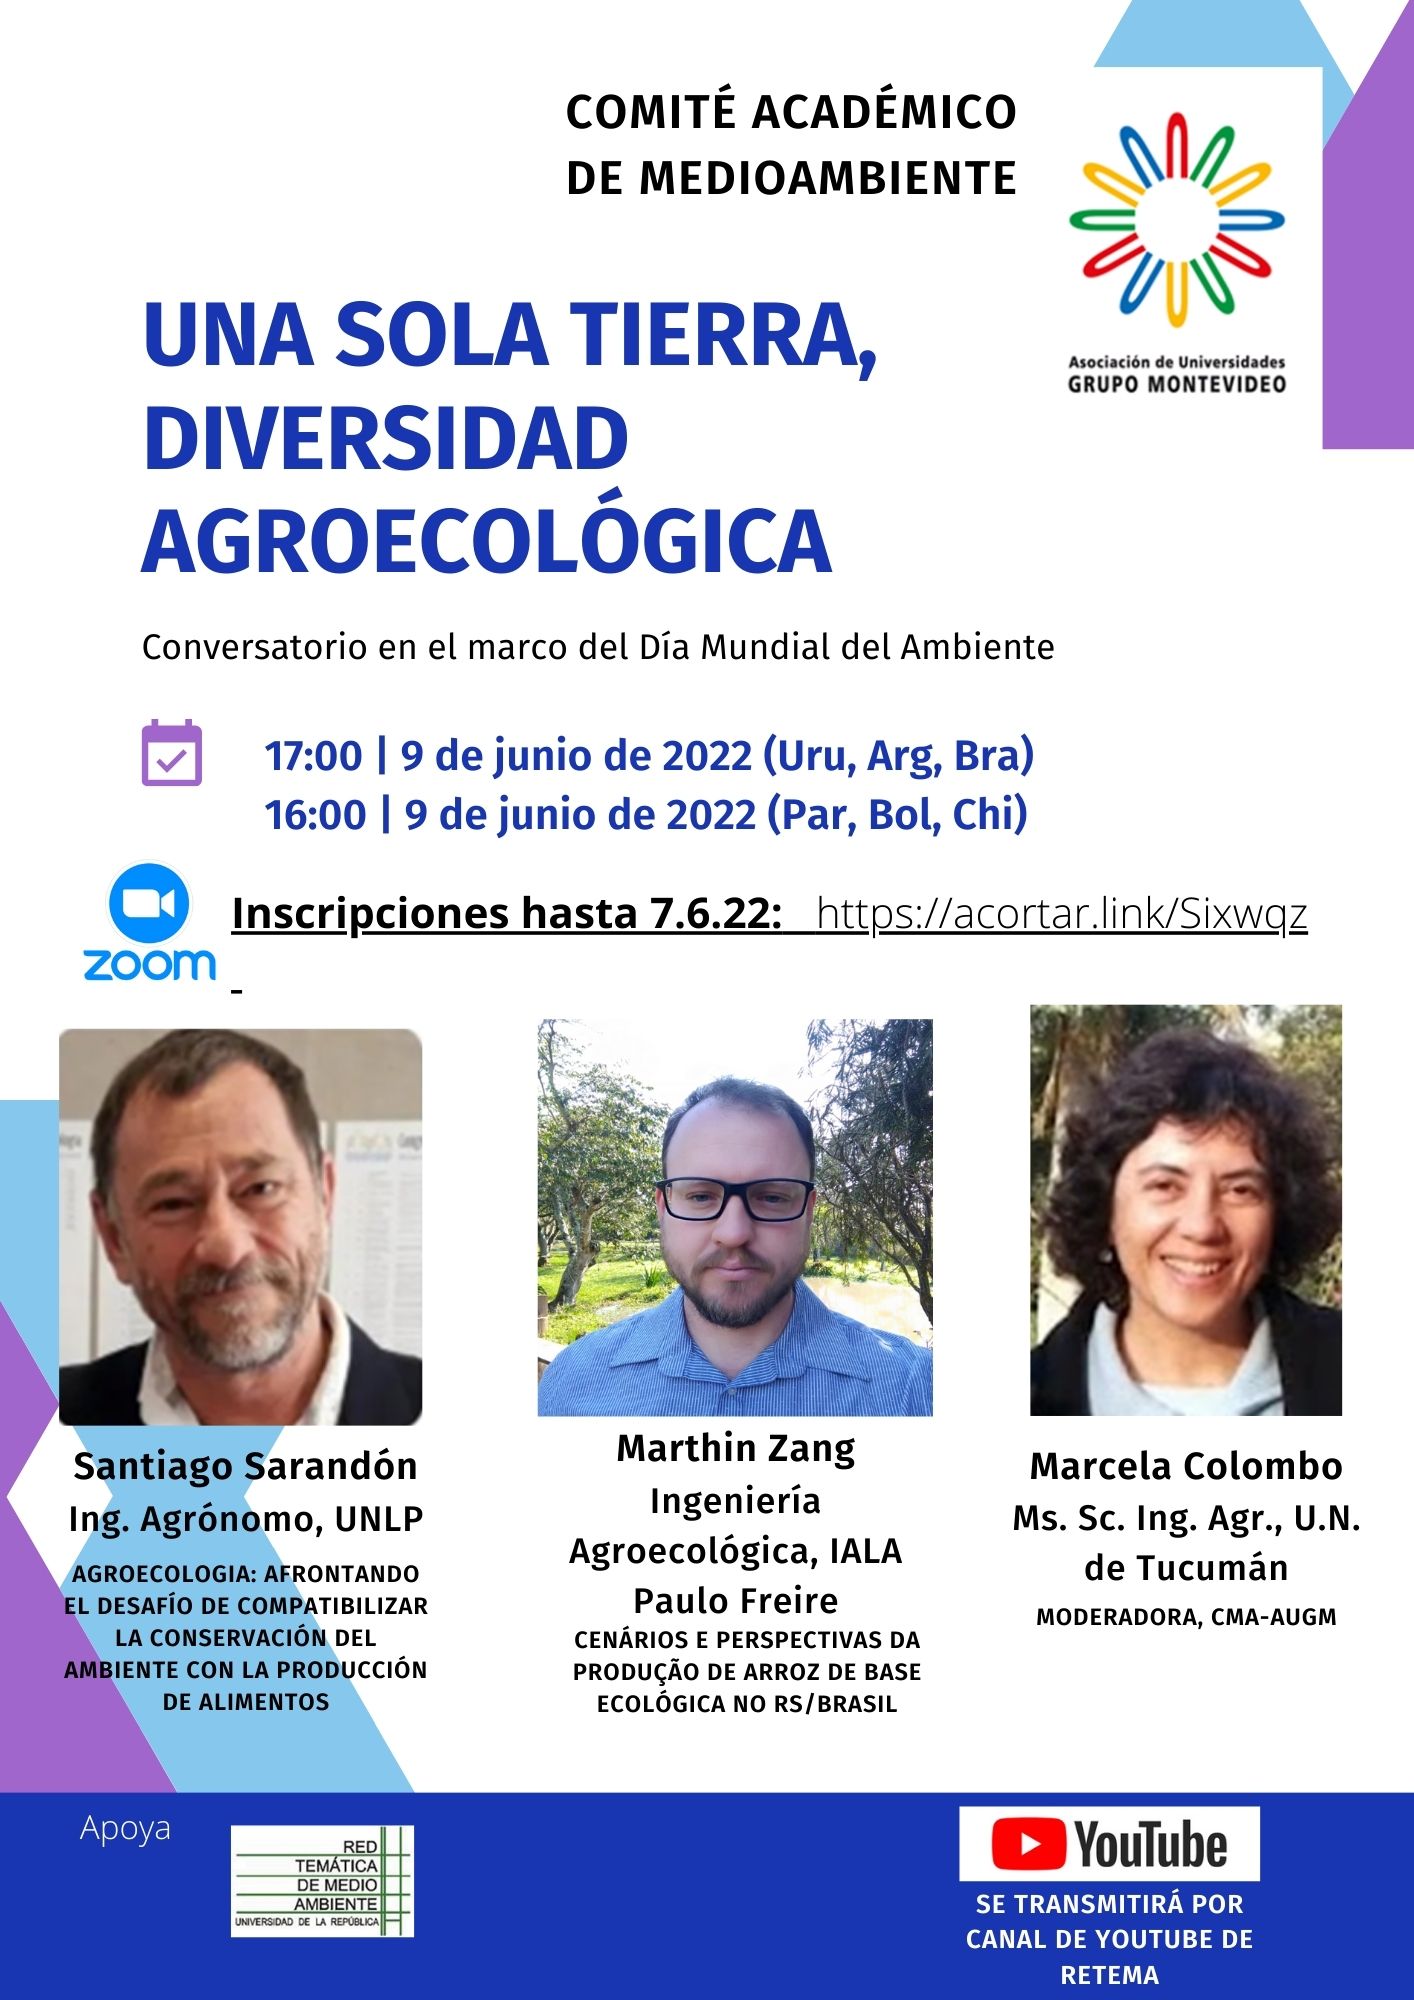 UNA SOLA TIERRA, DIVERSIDAD AGROECOLÓGICA - Conversatorio en el marco del Día Mundial del Ambiente